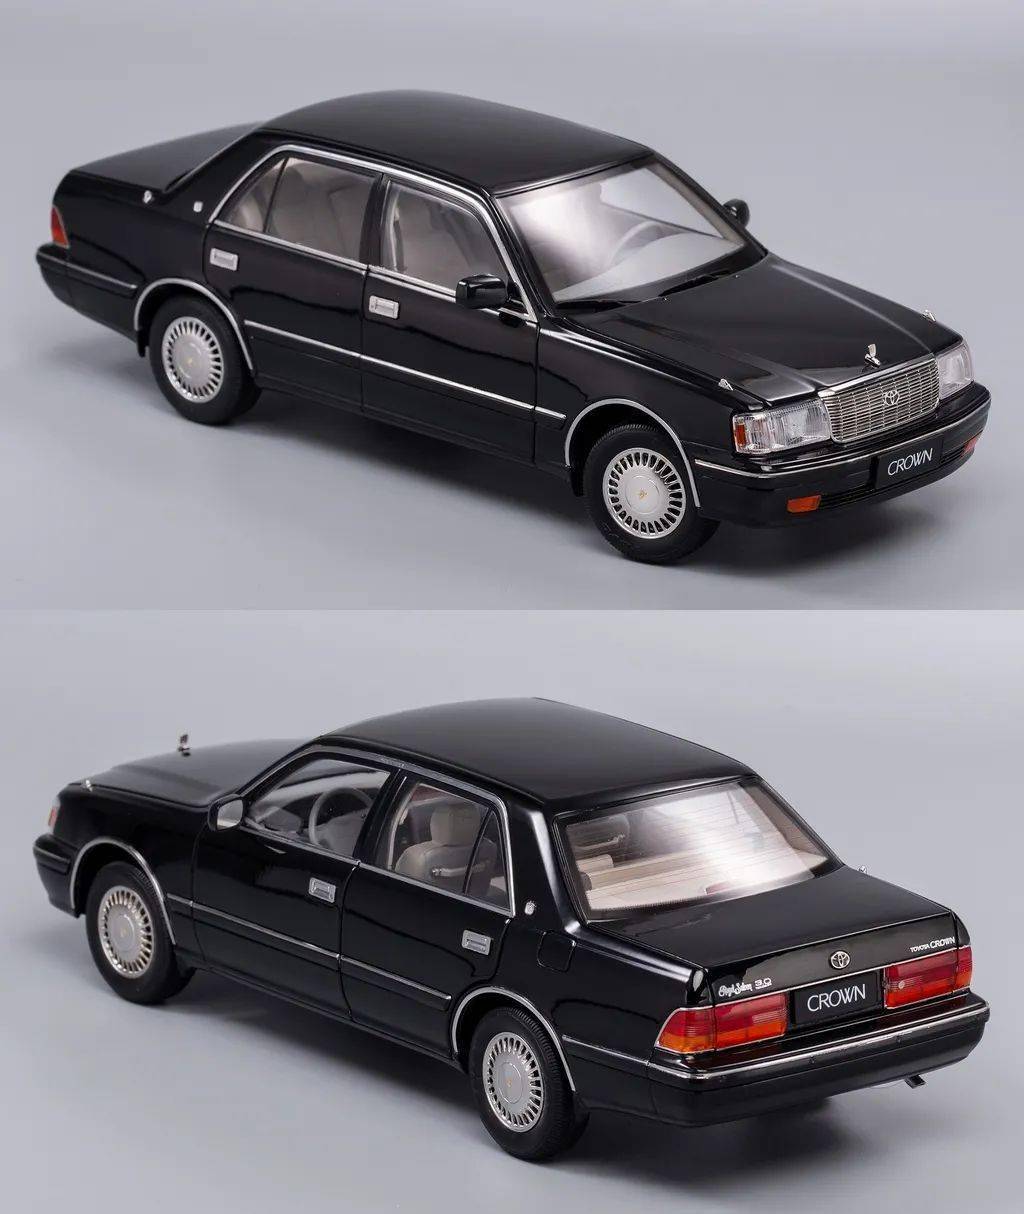 庞大的皇冠133和155,广东人在90年代接触到最多的豪华轿车就是这两款